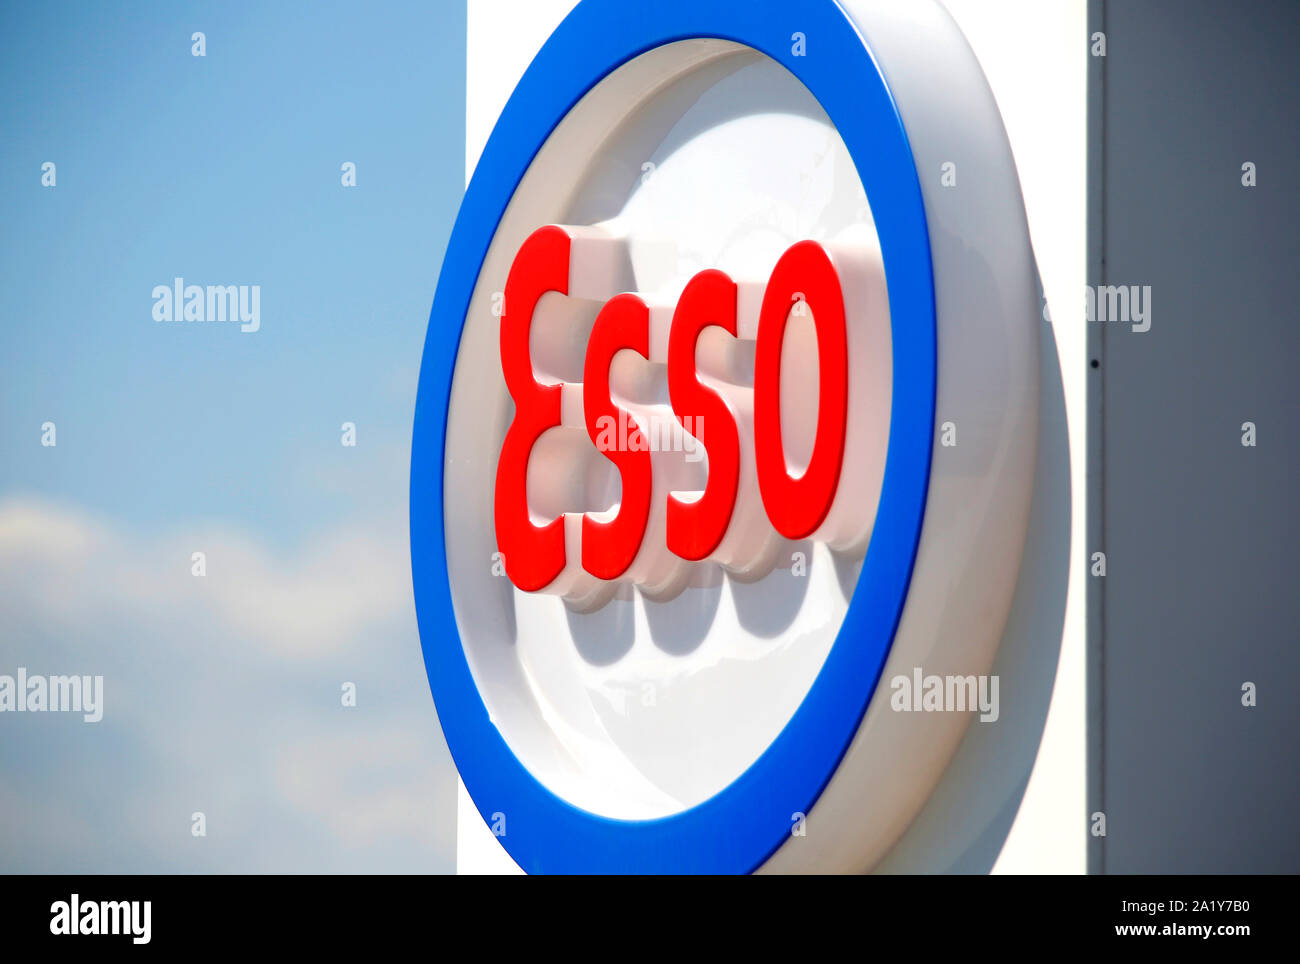 Esso fuel logo. Stock Photo